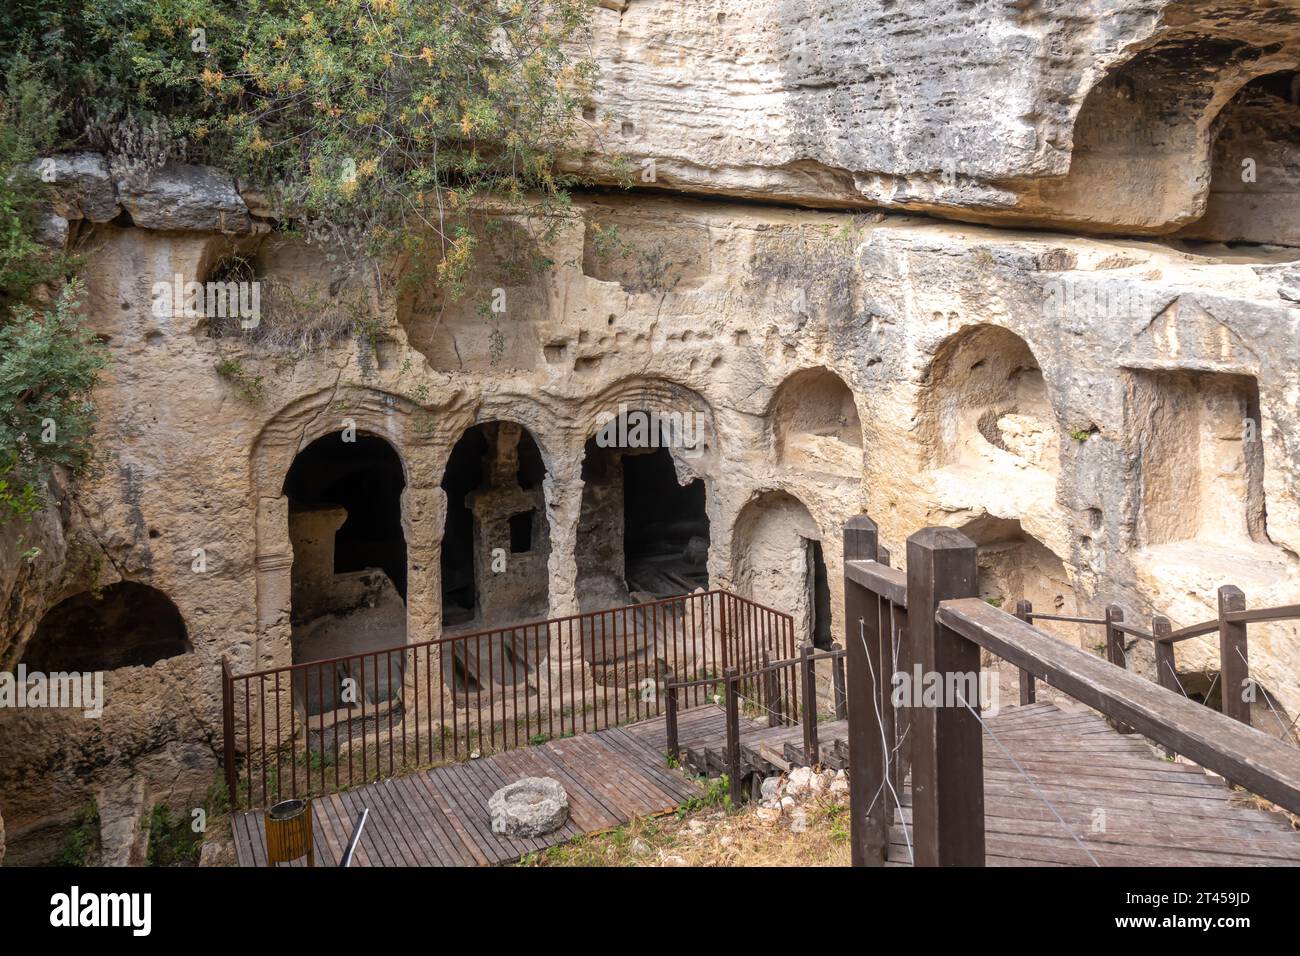 Grotte Besikli, Cradle Cave, point de repère à Hatay, Turquie. Construit au 1e siècle av. J.-C., l'ancien réseau romain de grottes protégeait contre les inondations Banque D'Images